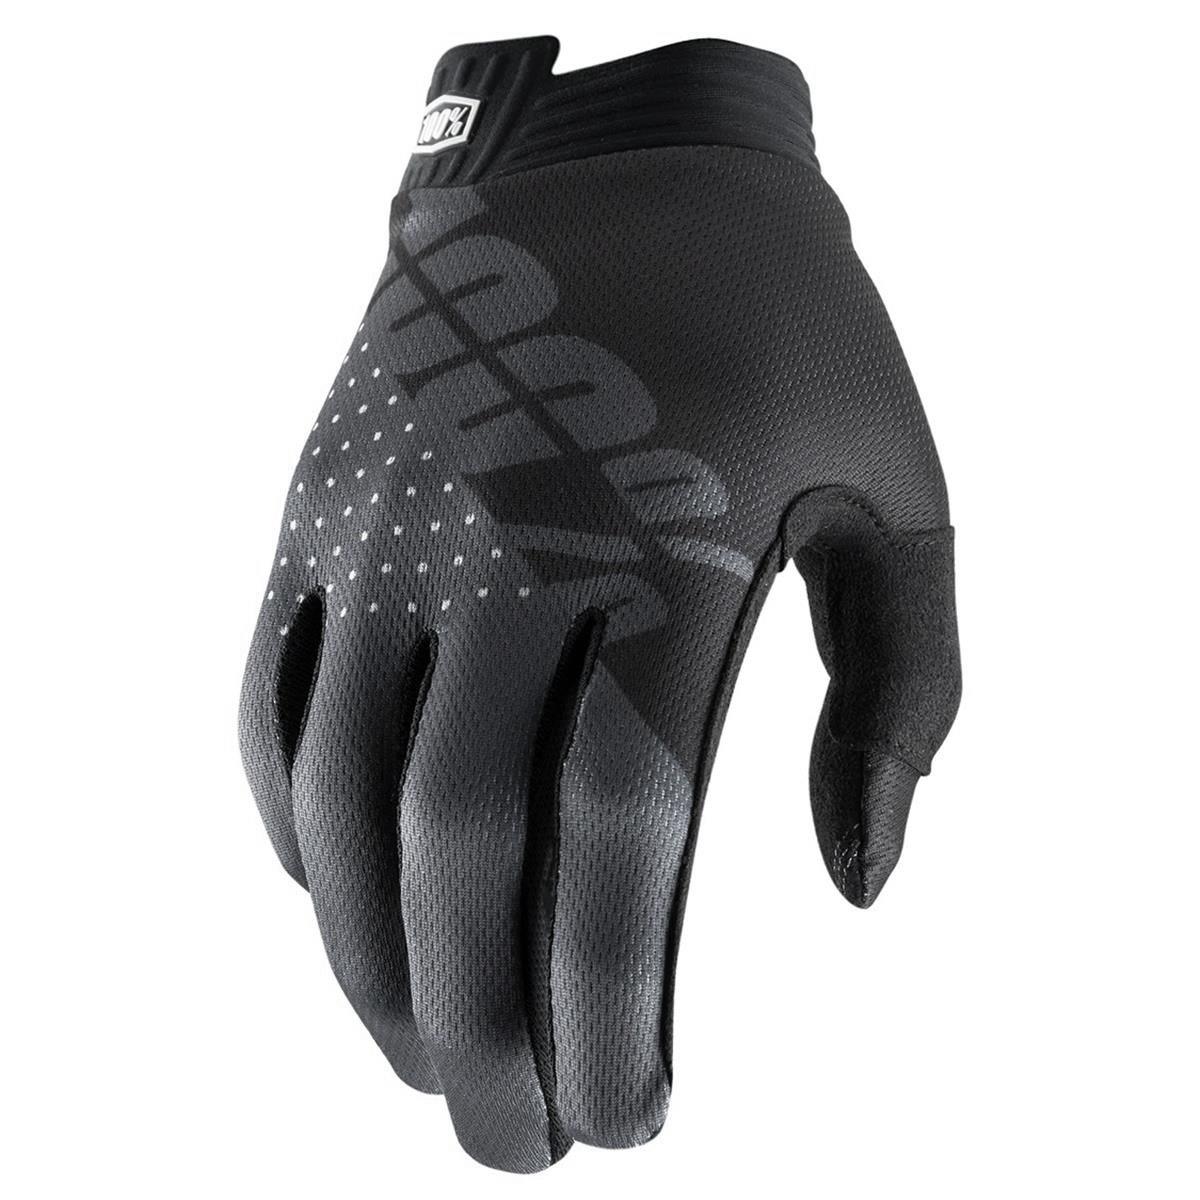 100% Bike Gloves iTrack Black/Charcoal